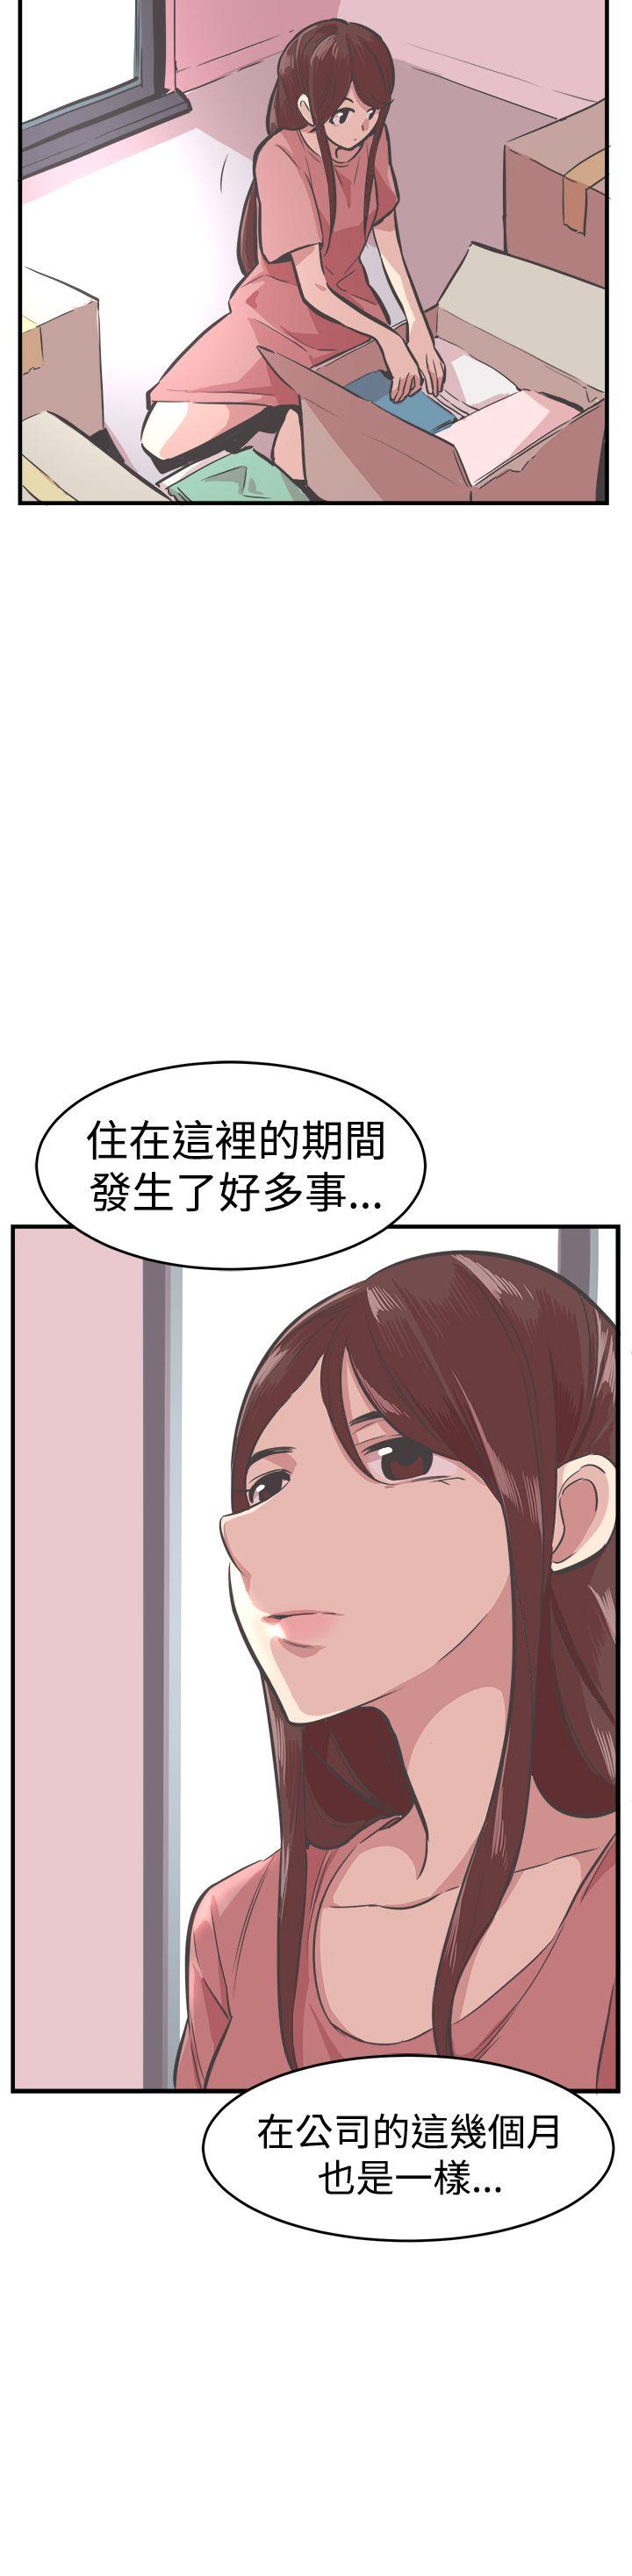 韩国污漫画 青春男女(完結) 第25话 15